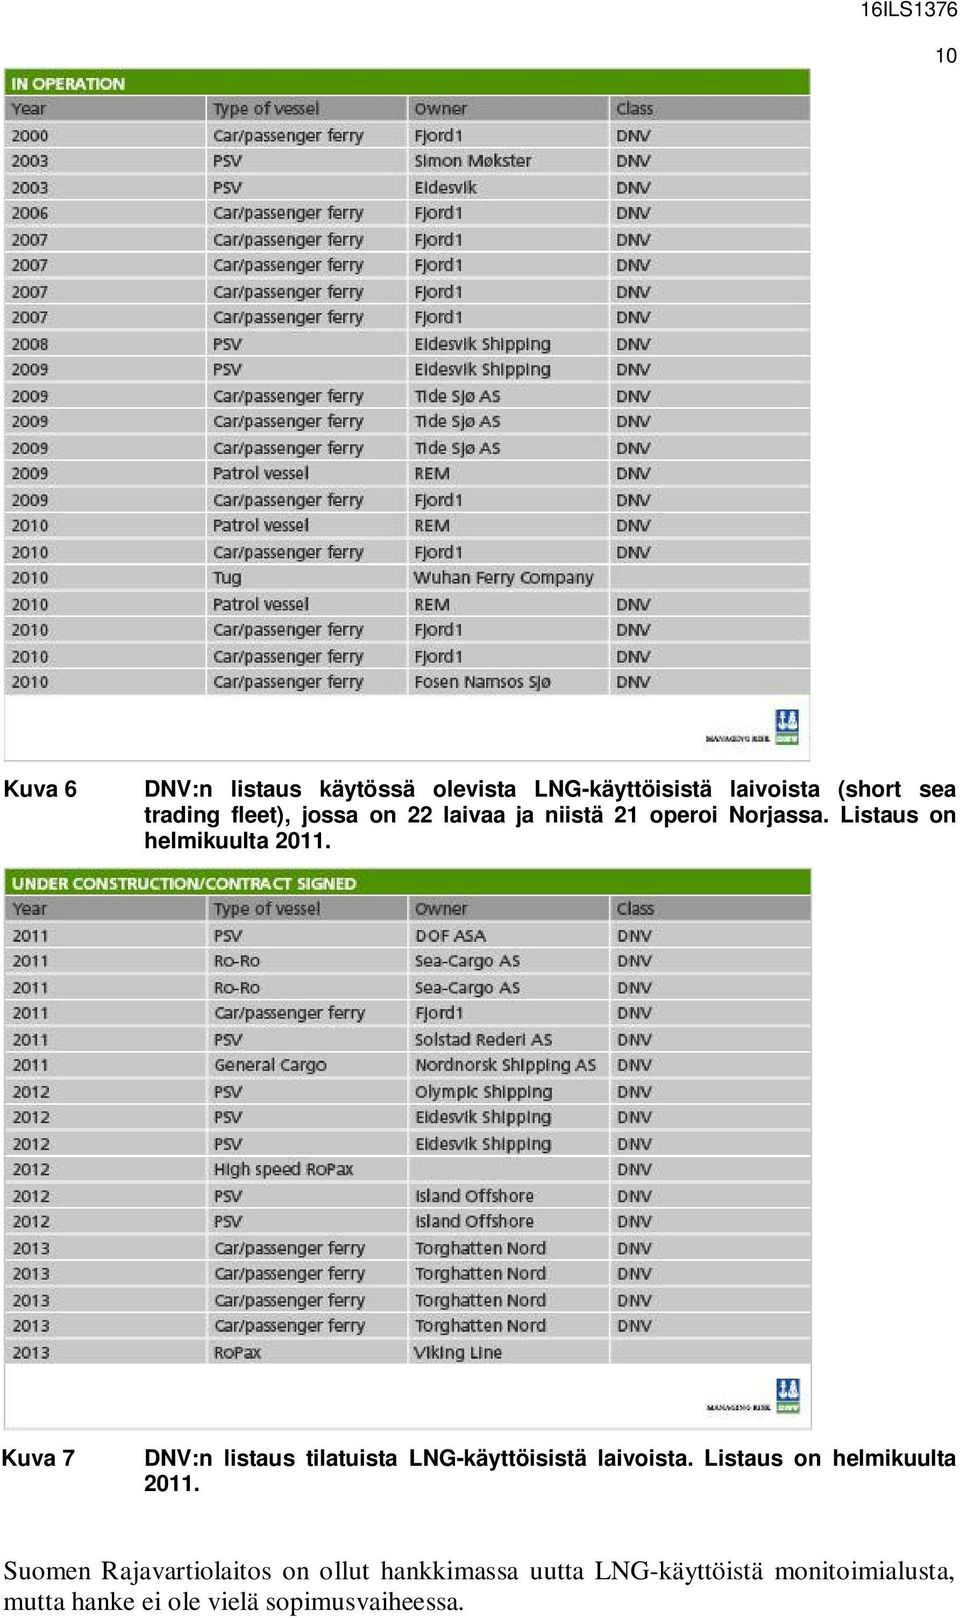 Kuva 7 DNV:n listaus tilatuista LNG-käyttöisistä laivoista. Listaus on helmikuulta 2011.